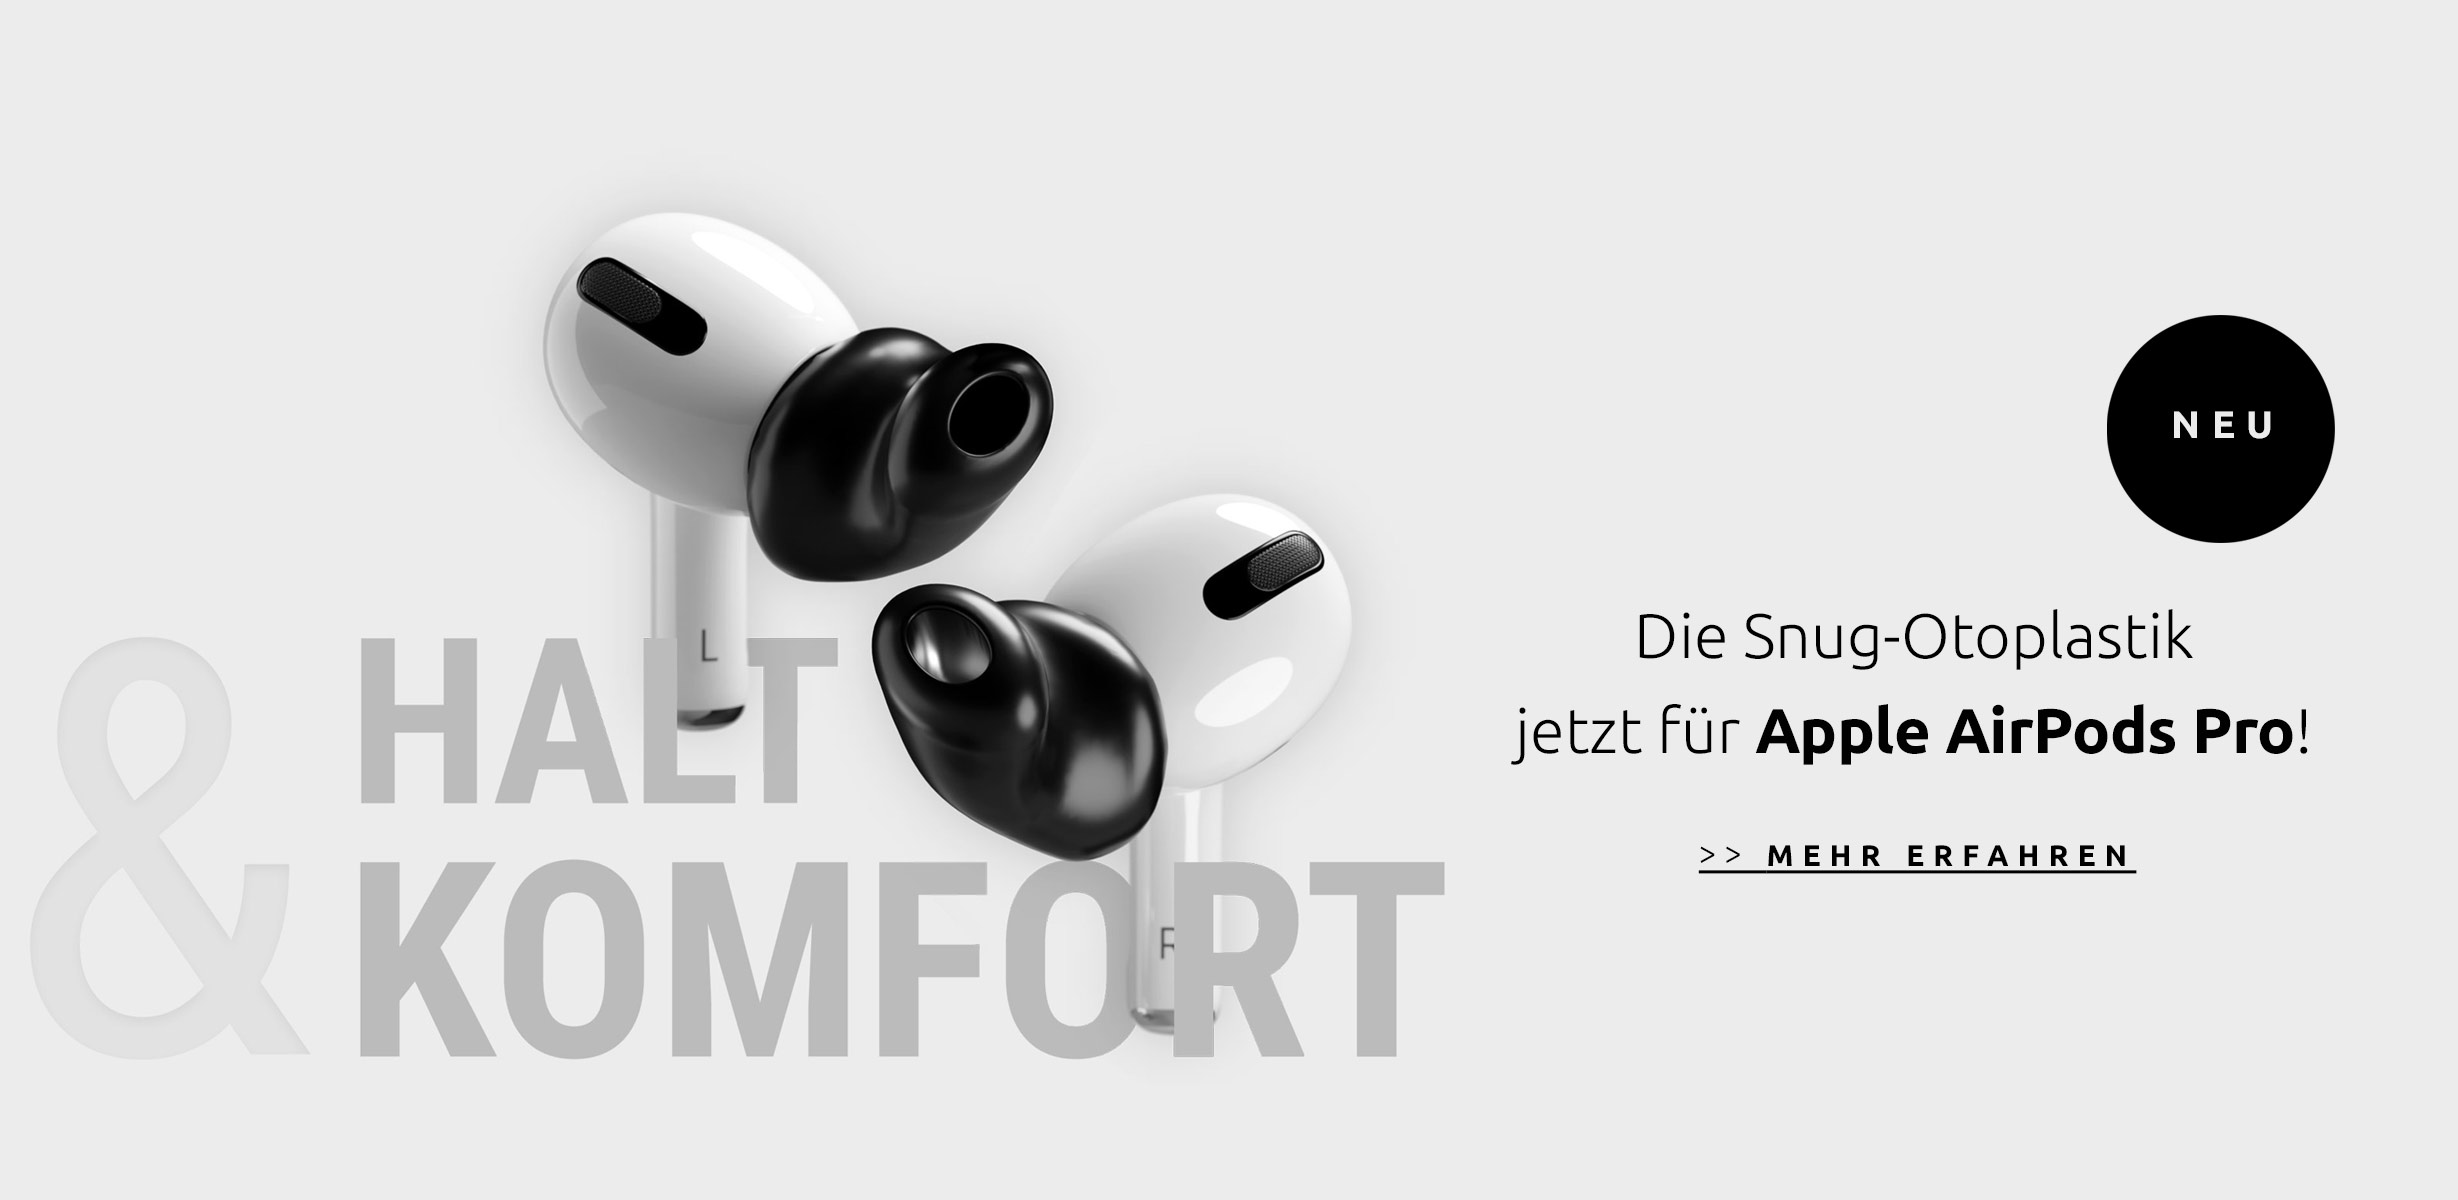 NEU: Die Snug Otoplastik jetzt für Apple AirPods Pro!